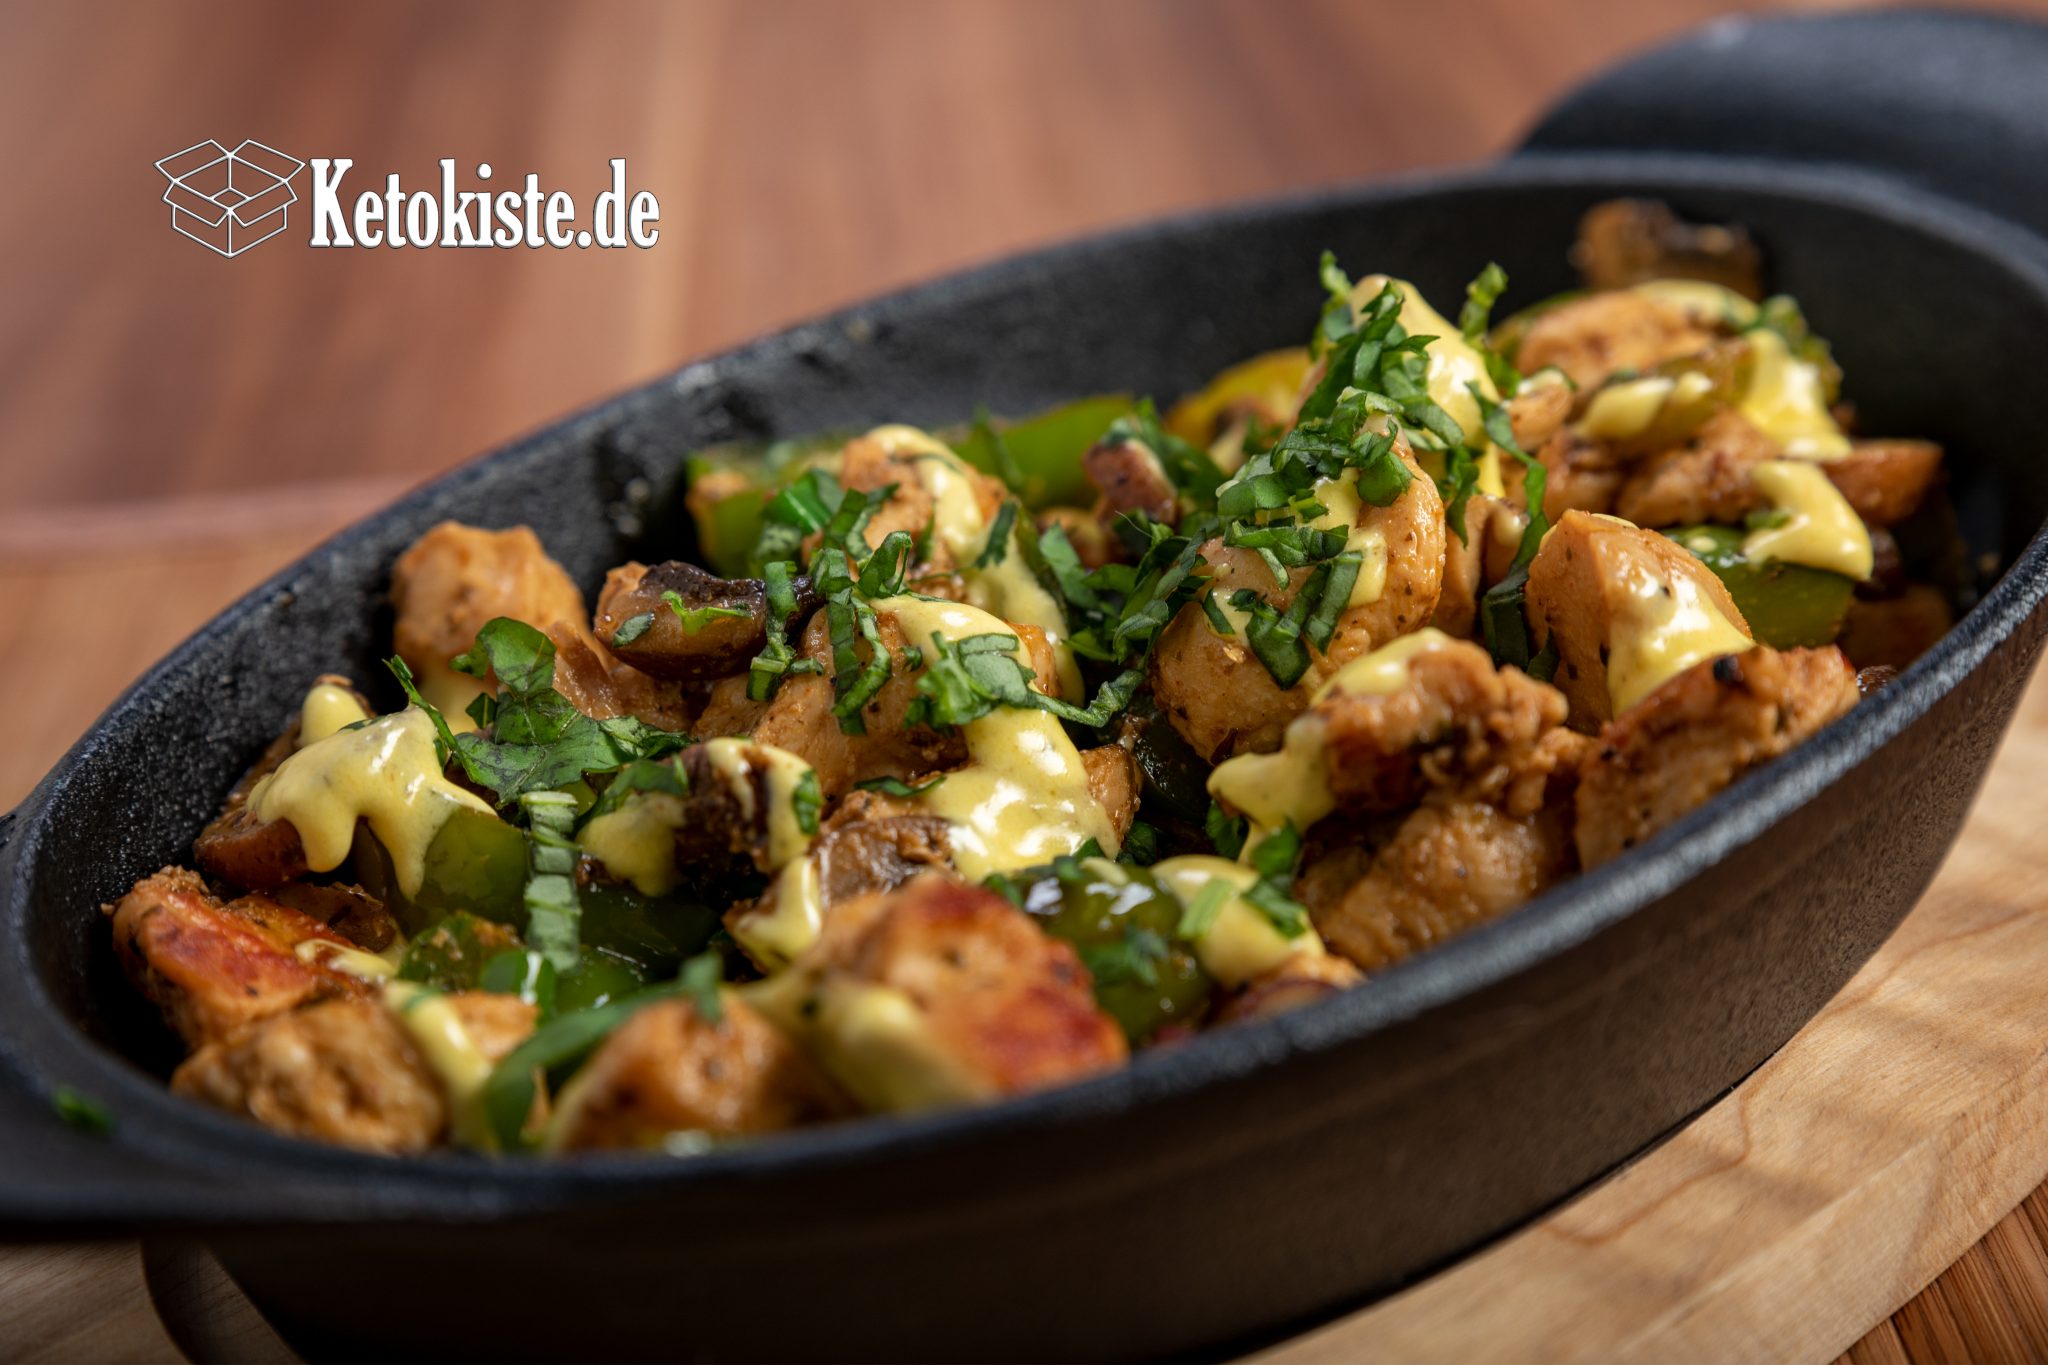 Hühnchenpfanne mit Gemüse — Ketokiste.de - Alles rund um die ketogene ...